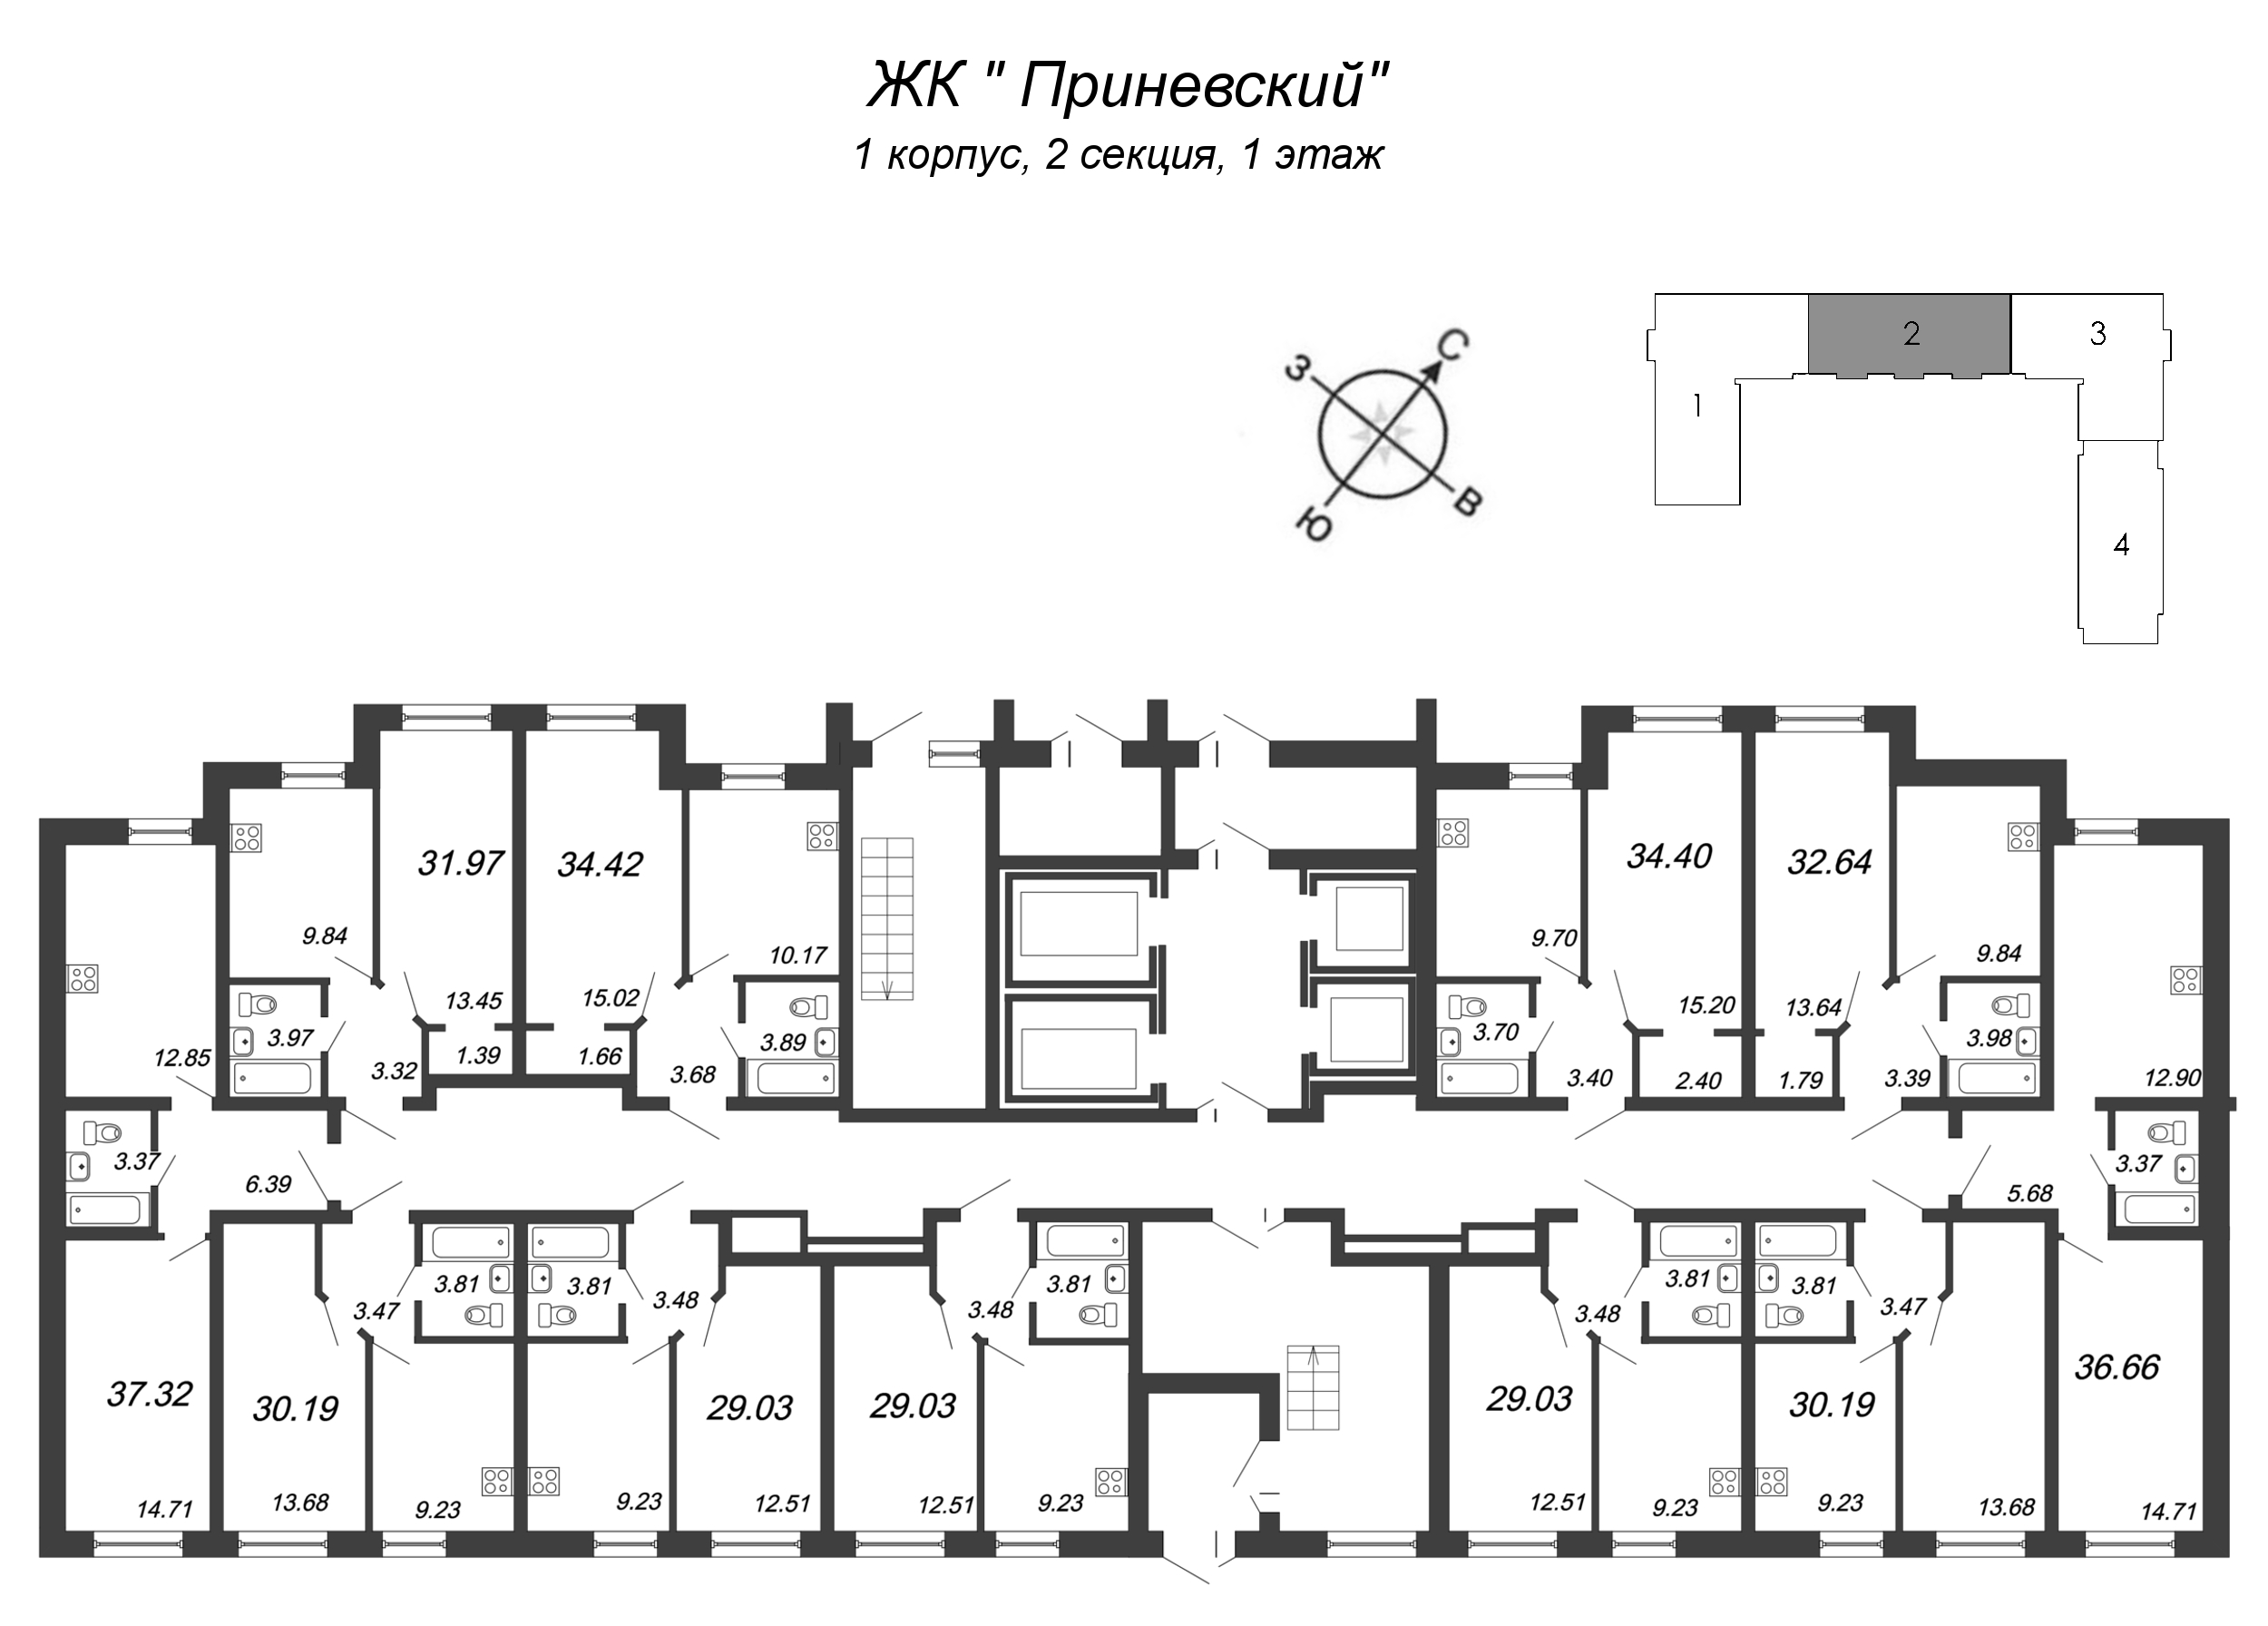 1-комнатная квартира, 29.03 м² в ЖК "Приневский" - планировка этажа